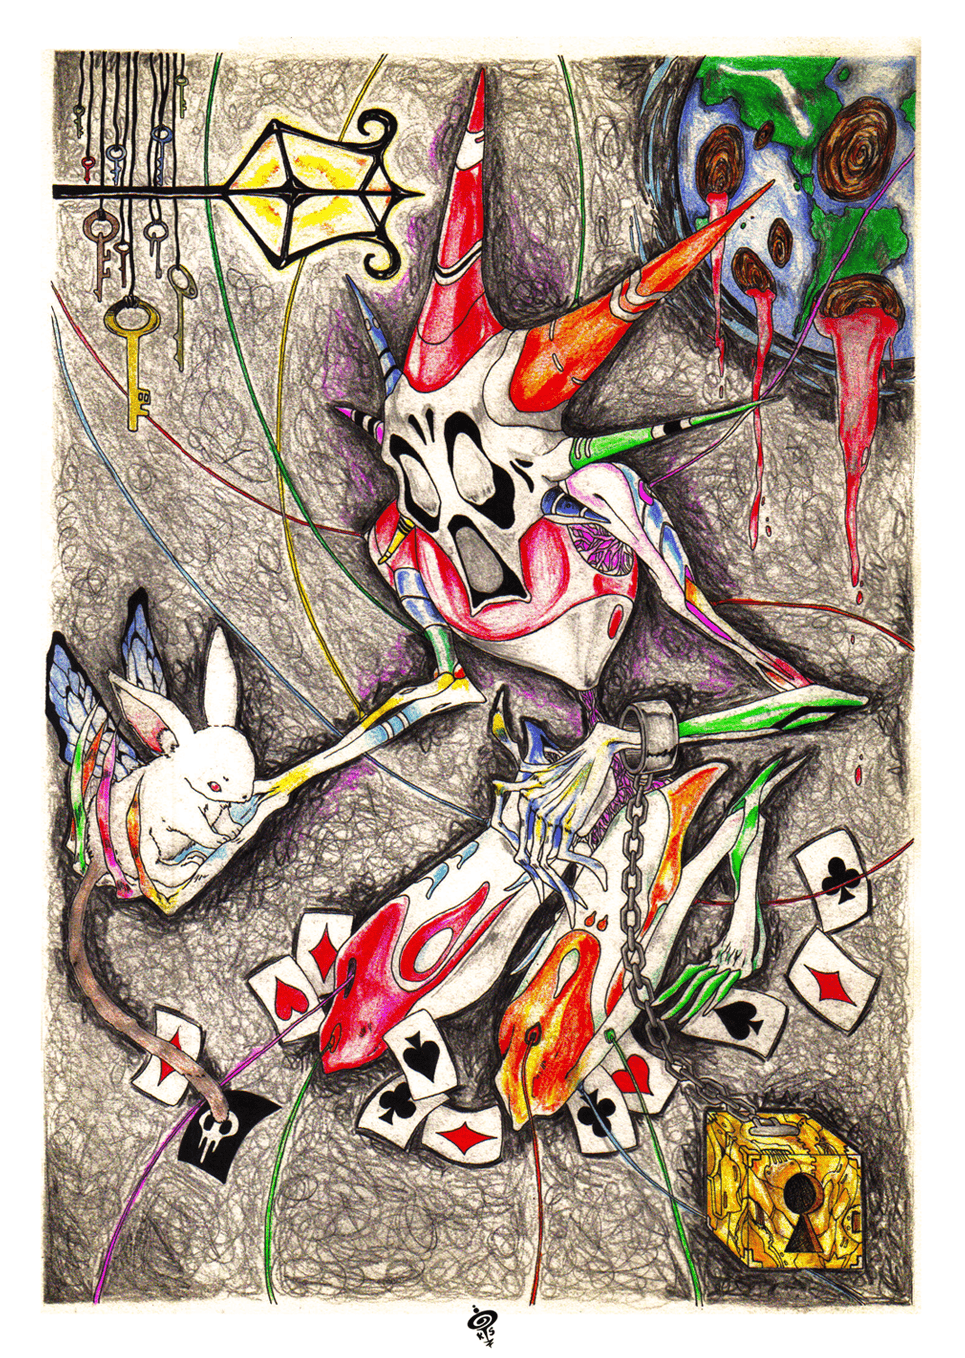 clown  fauces  sauce  manta  DESAMOR  watercolor  pencil  light  shadows   animal  self-portrait  portrait